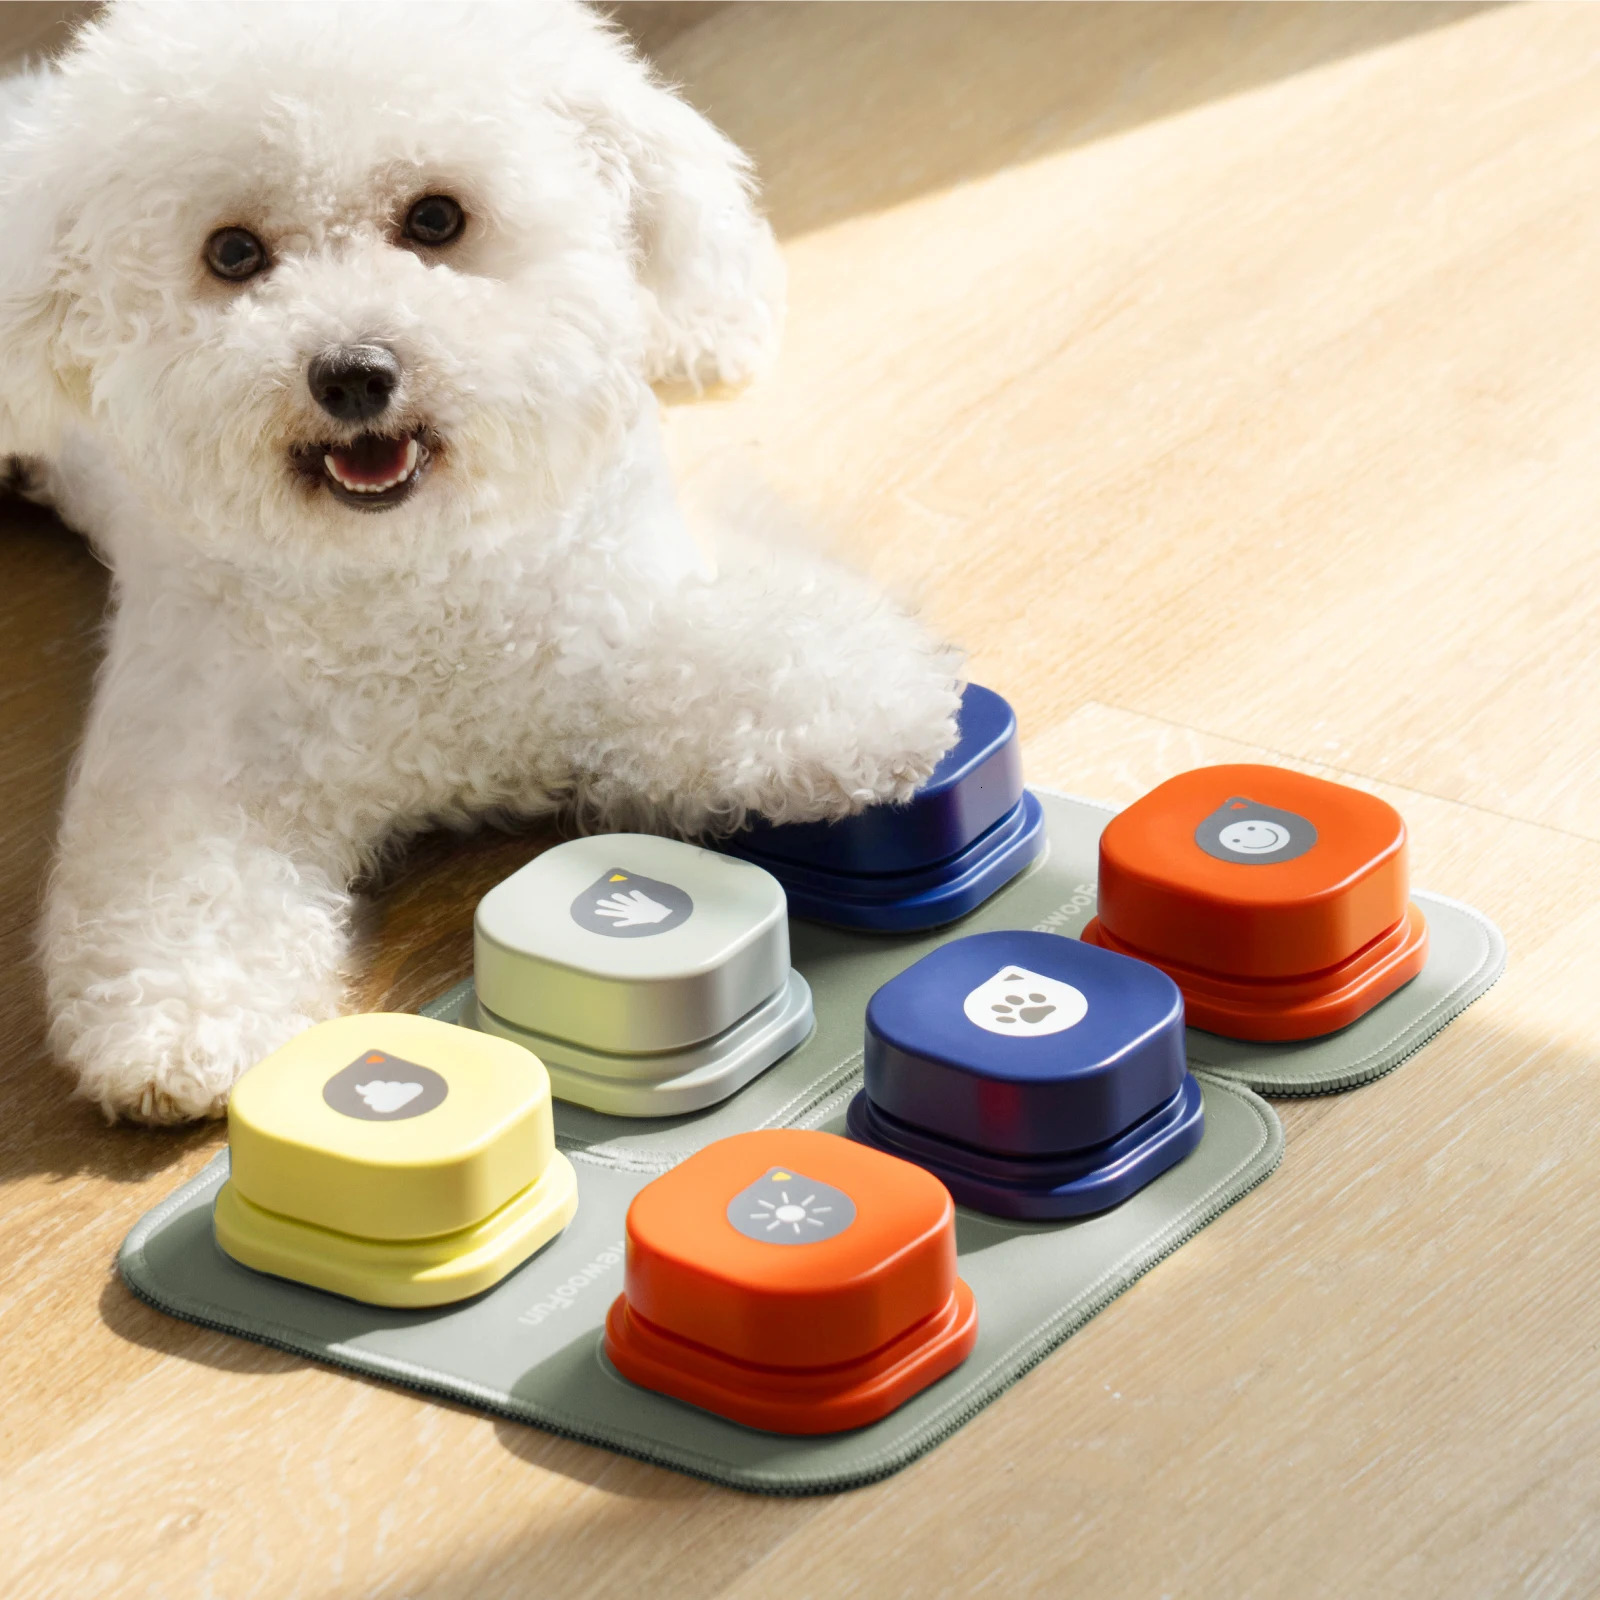 MEWOOFUN Dog Button Record Talking Pet Communication Vocal Training Toy Interativo Bell Ringer com almofada e adesivo fácil de usar 240306